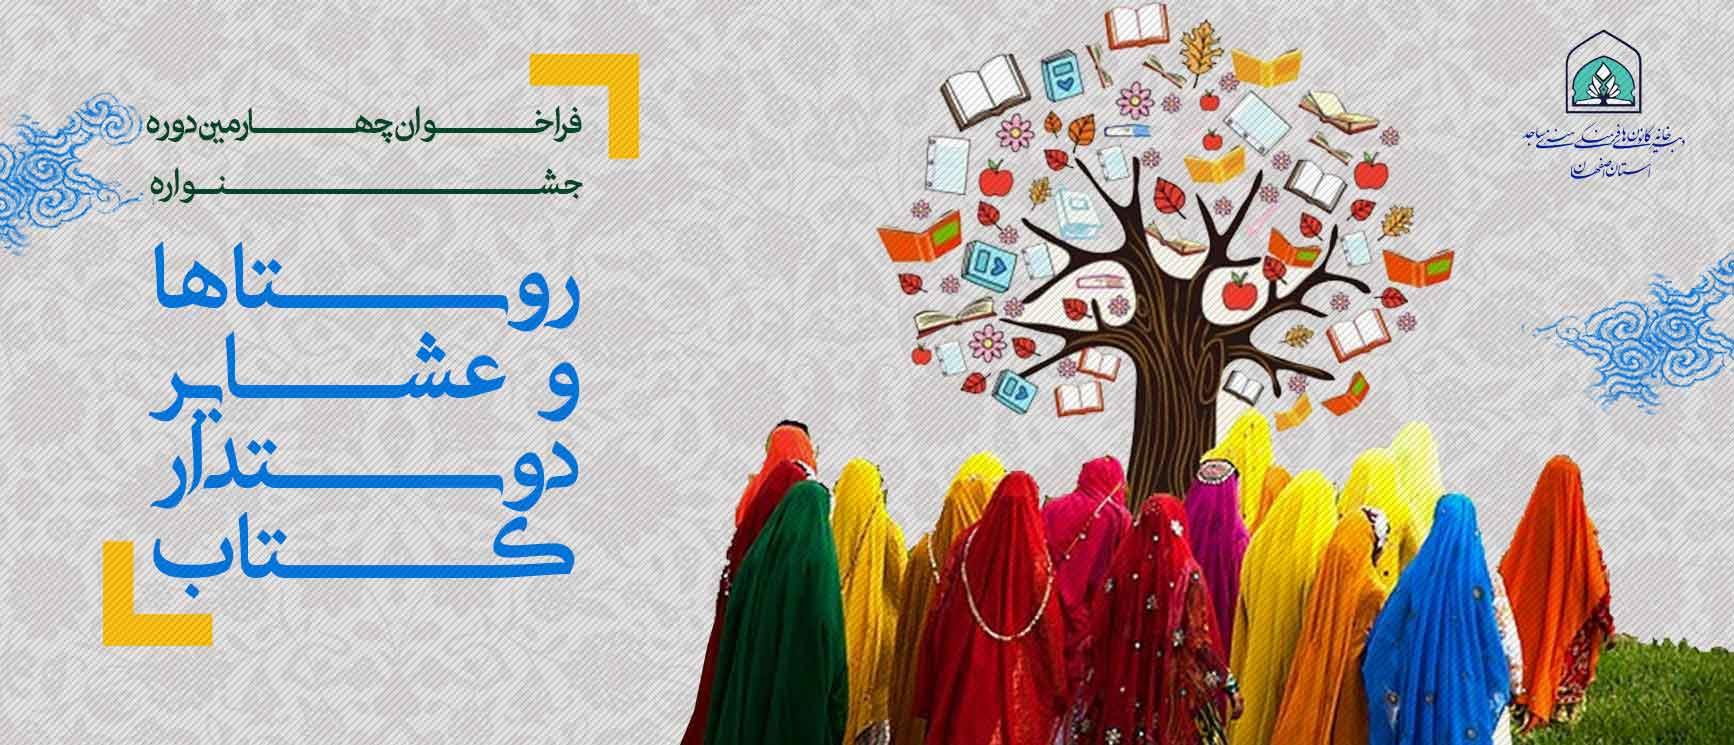 فراخوان چهارمین جشنواره روستاها و عشایر دوستدار کتاب